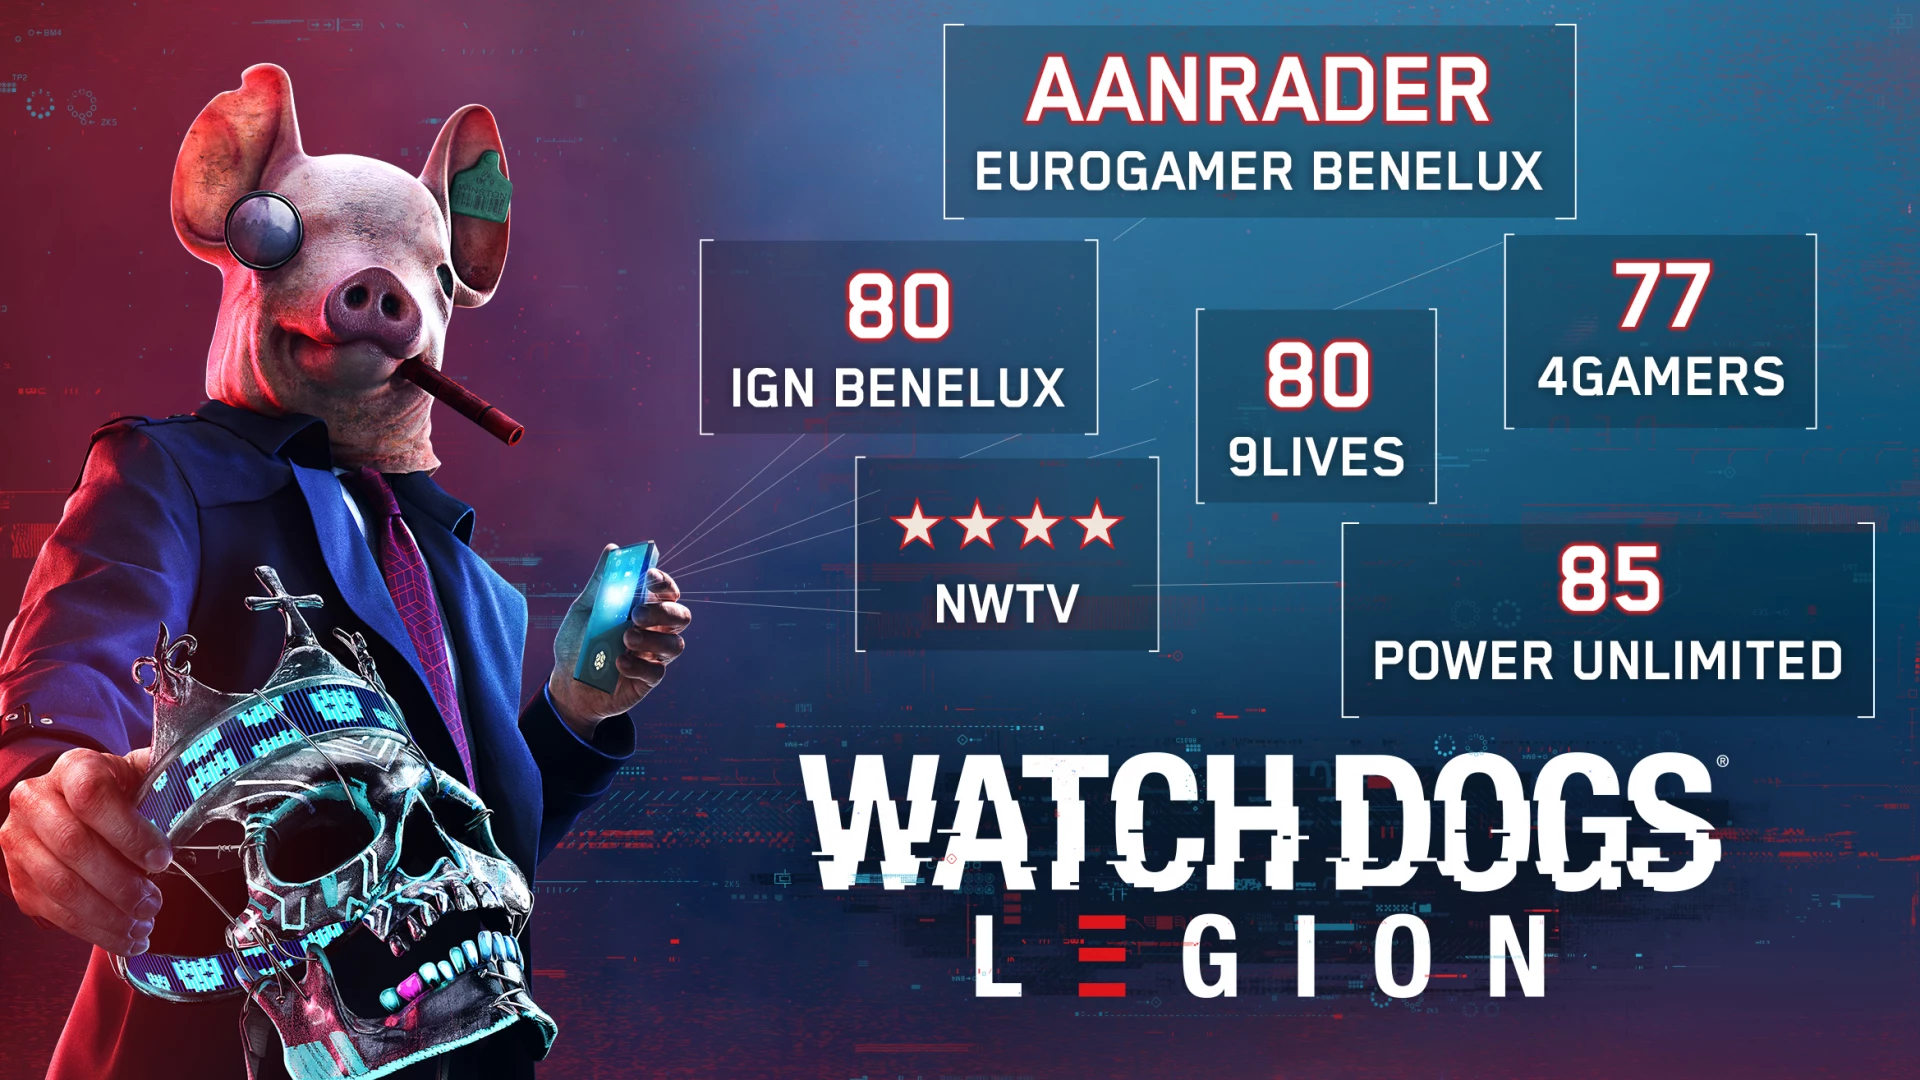 Watch Dogs Legion voor de PlayStation 4 kopen op nedgame.nl